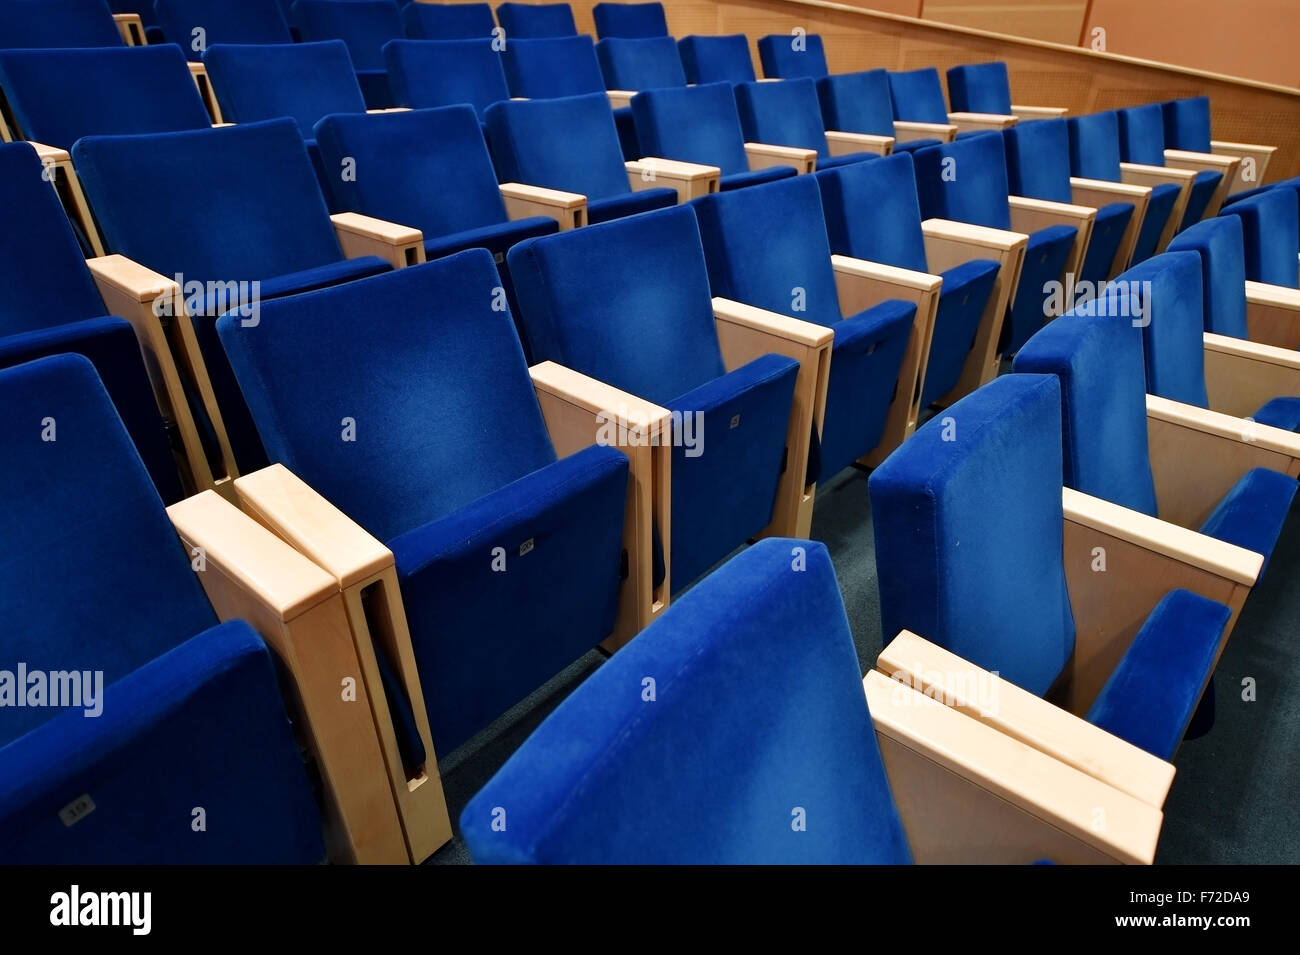 Chaises en velours bleu vide à l'intérieur d'un amphithéâtre Banque D'Images